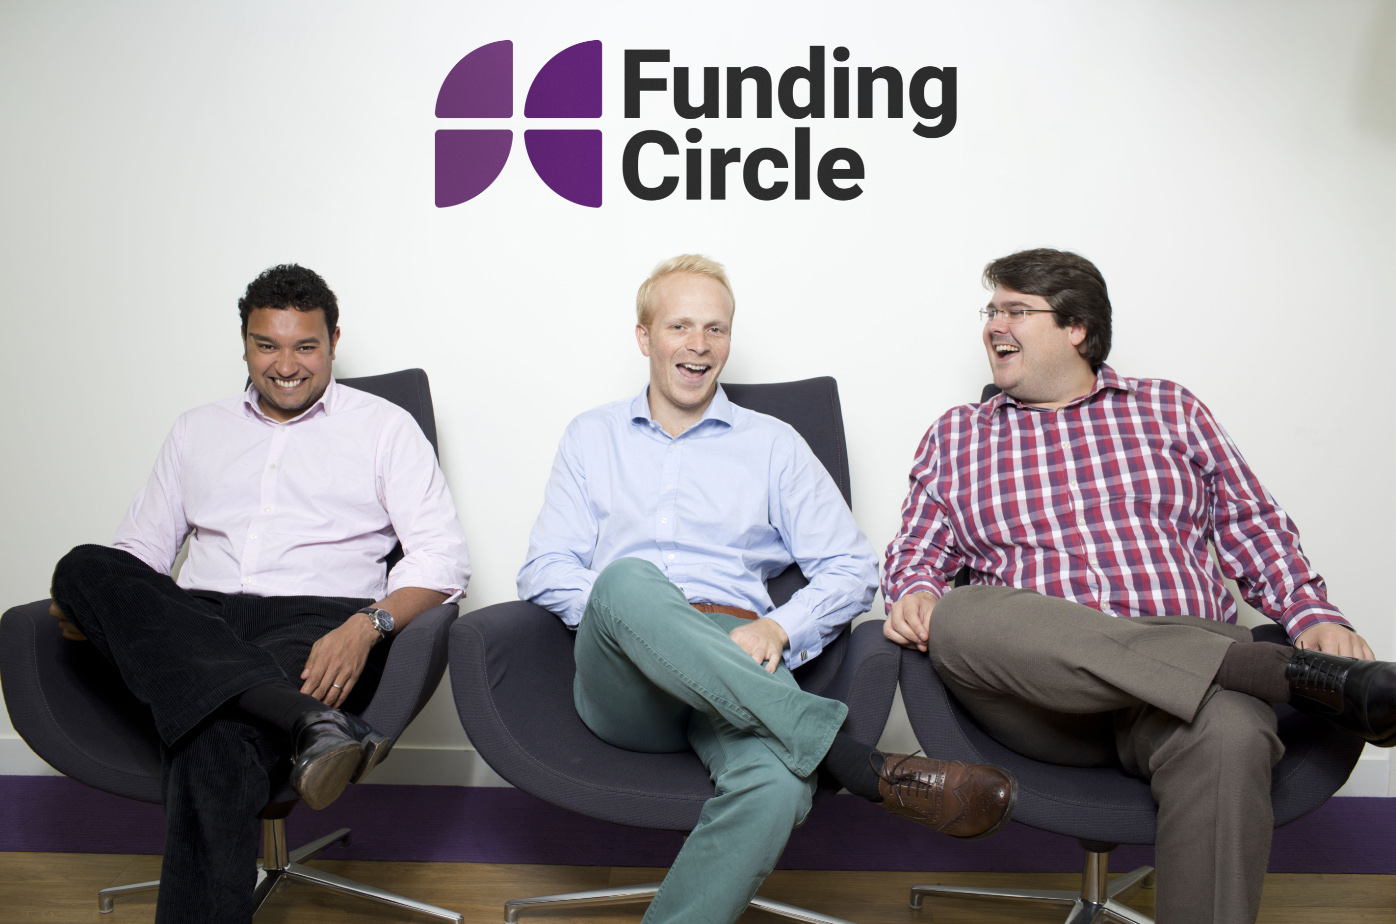 De oprichters van Funding Circle v.l.n.r. Samir Desai, James Meekings en Andrew Mullinger.